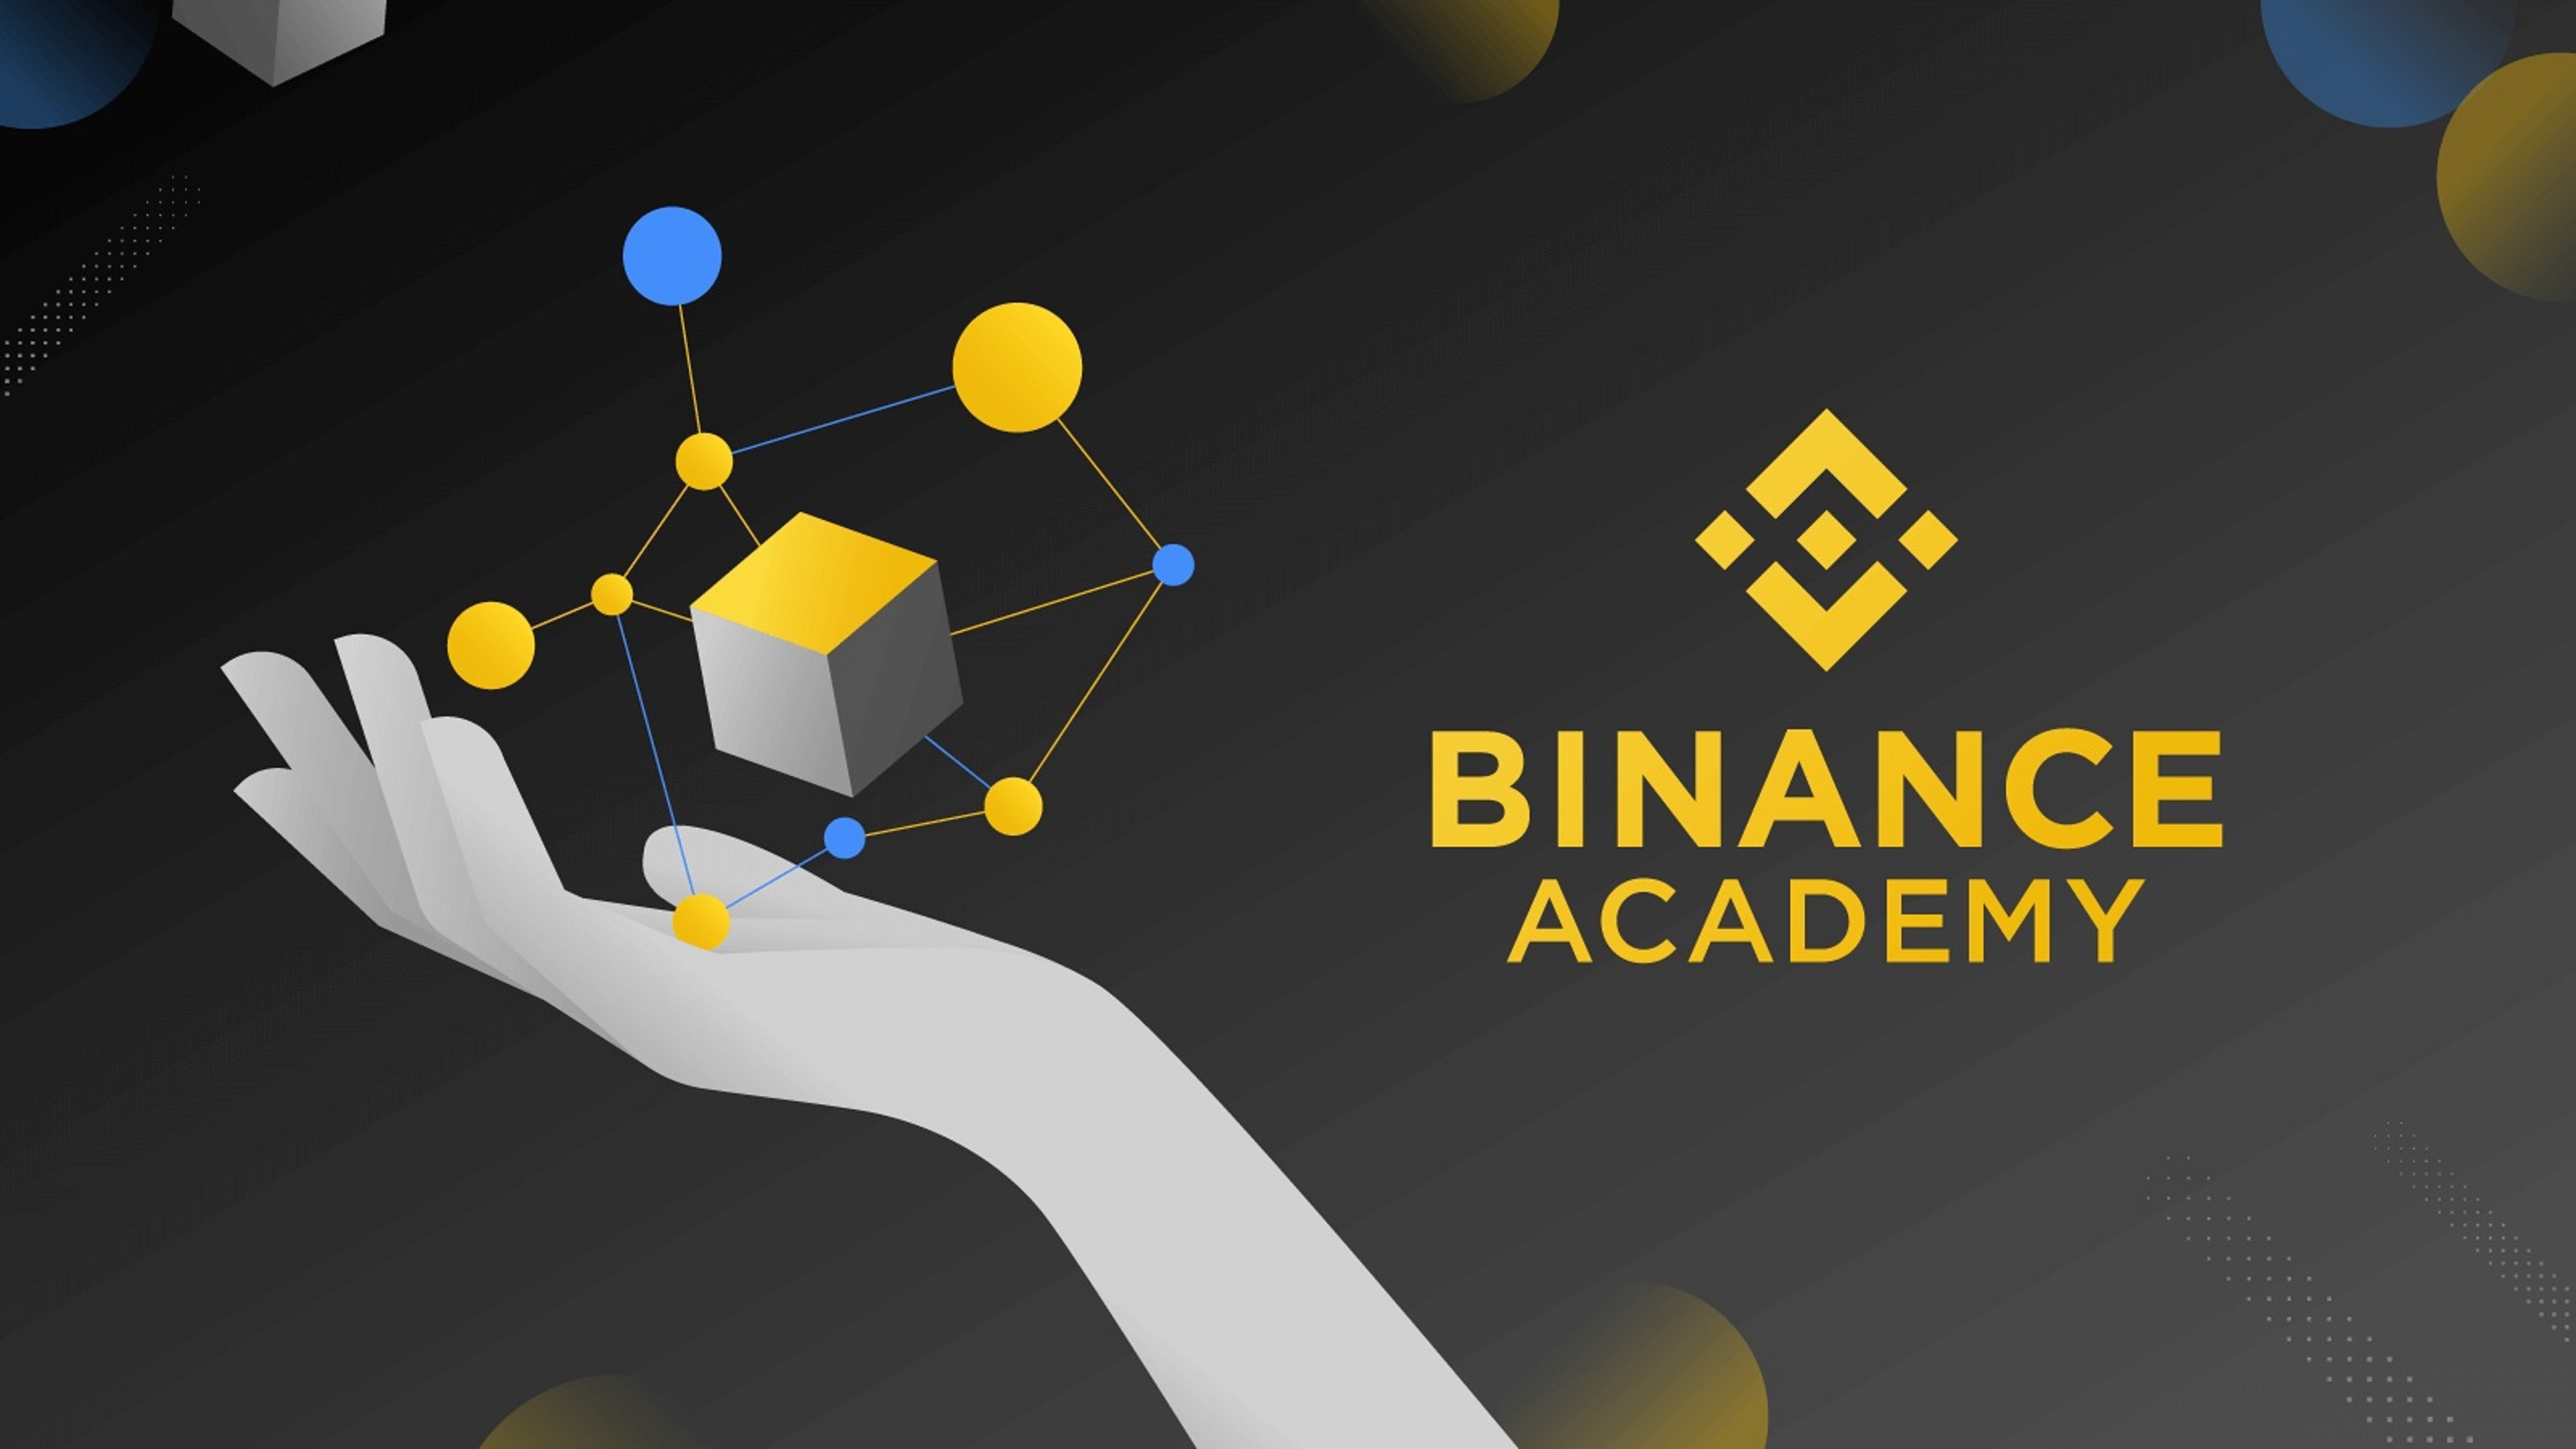 Binance Academy เผย คนรุ่นใหม่ยอมรับเทคโนโลยี Web3 มากขึ้น